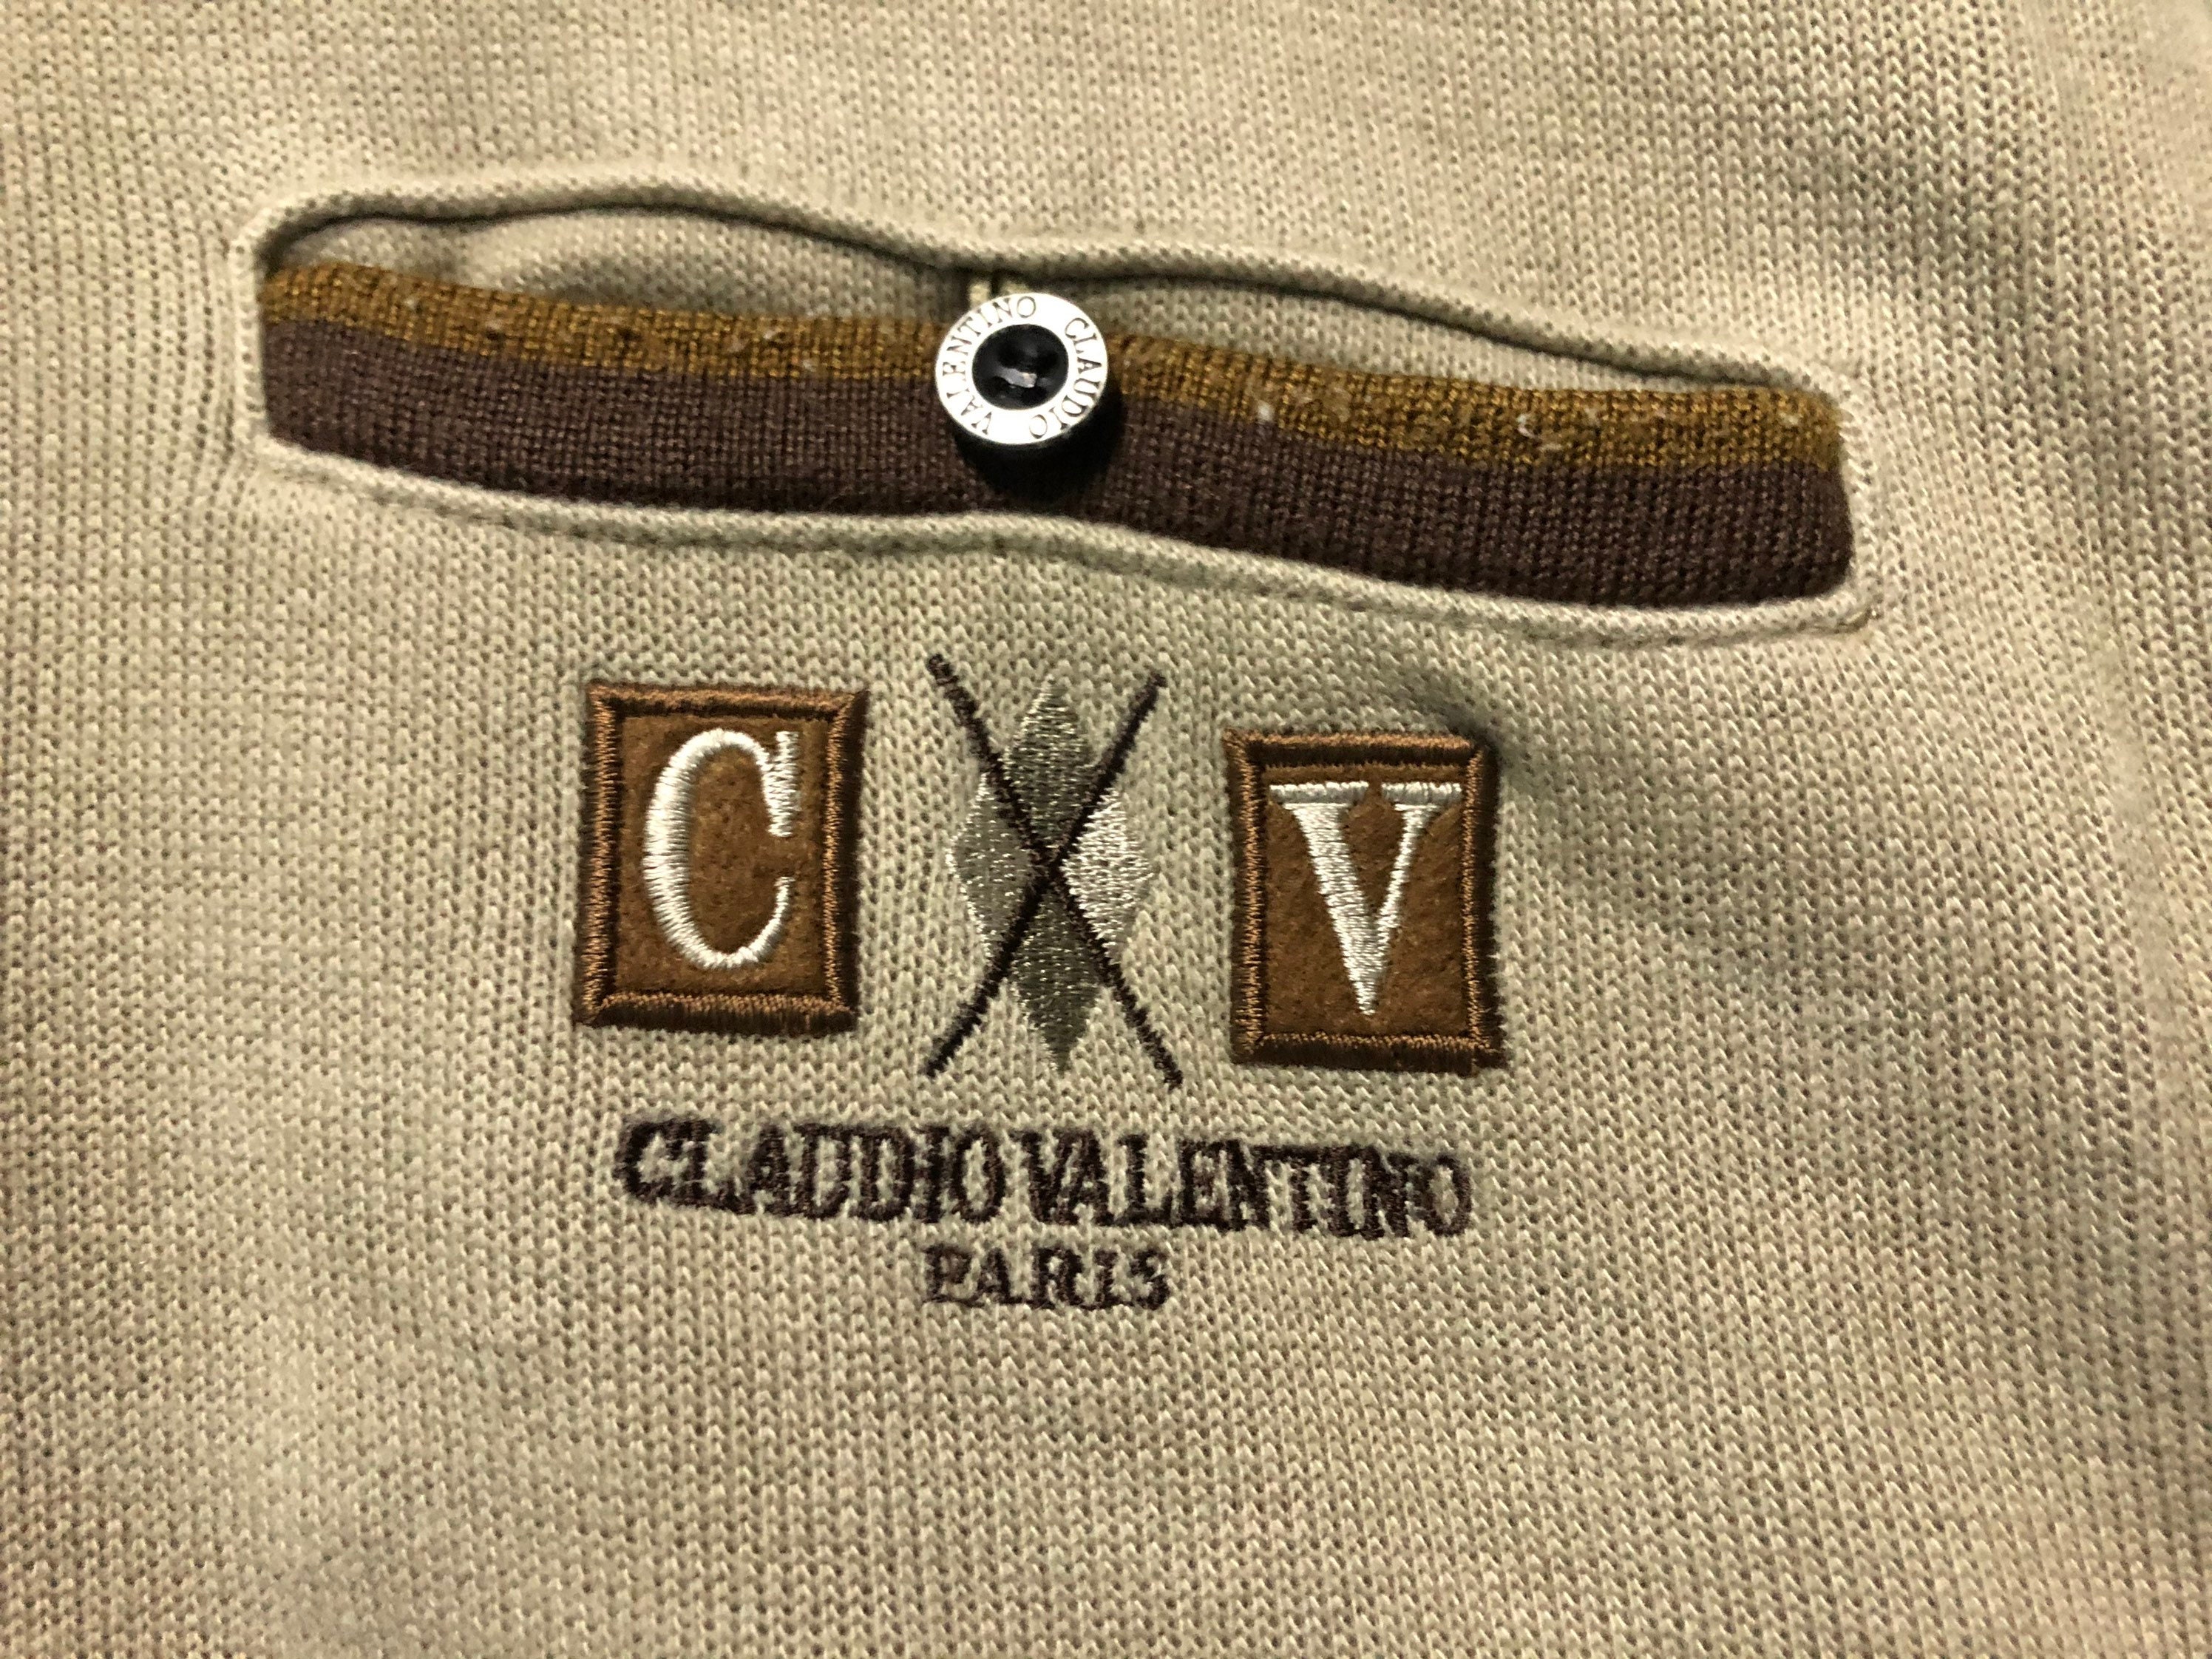 Vintage Claudio Valentino Paris Sweatshirt Embroidery Claudio | Etsy